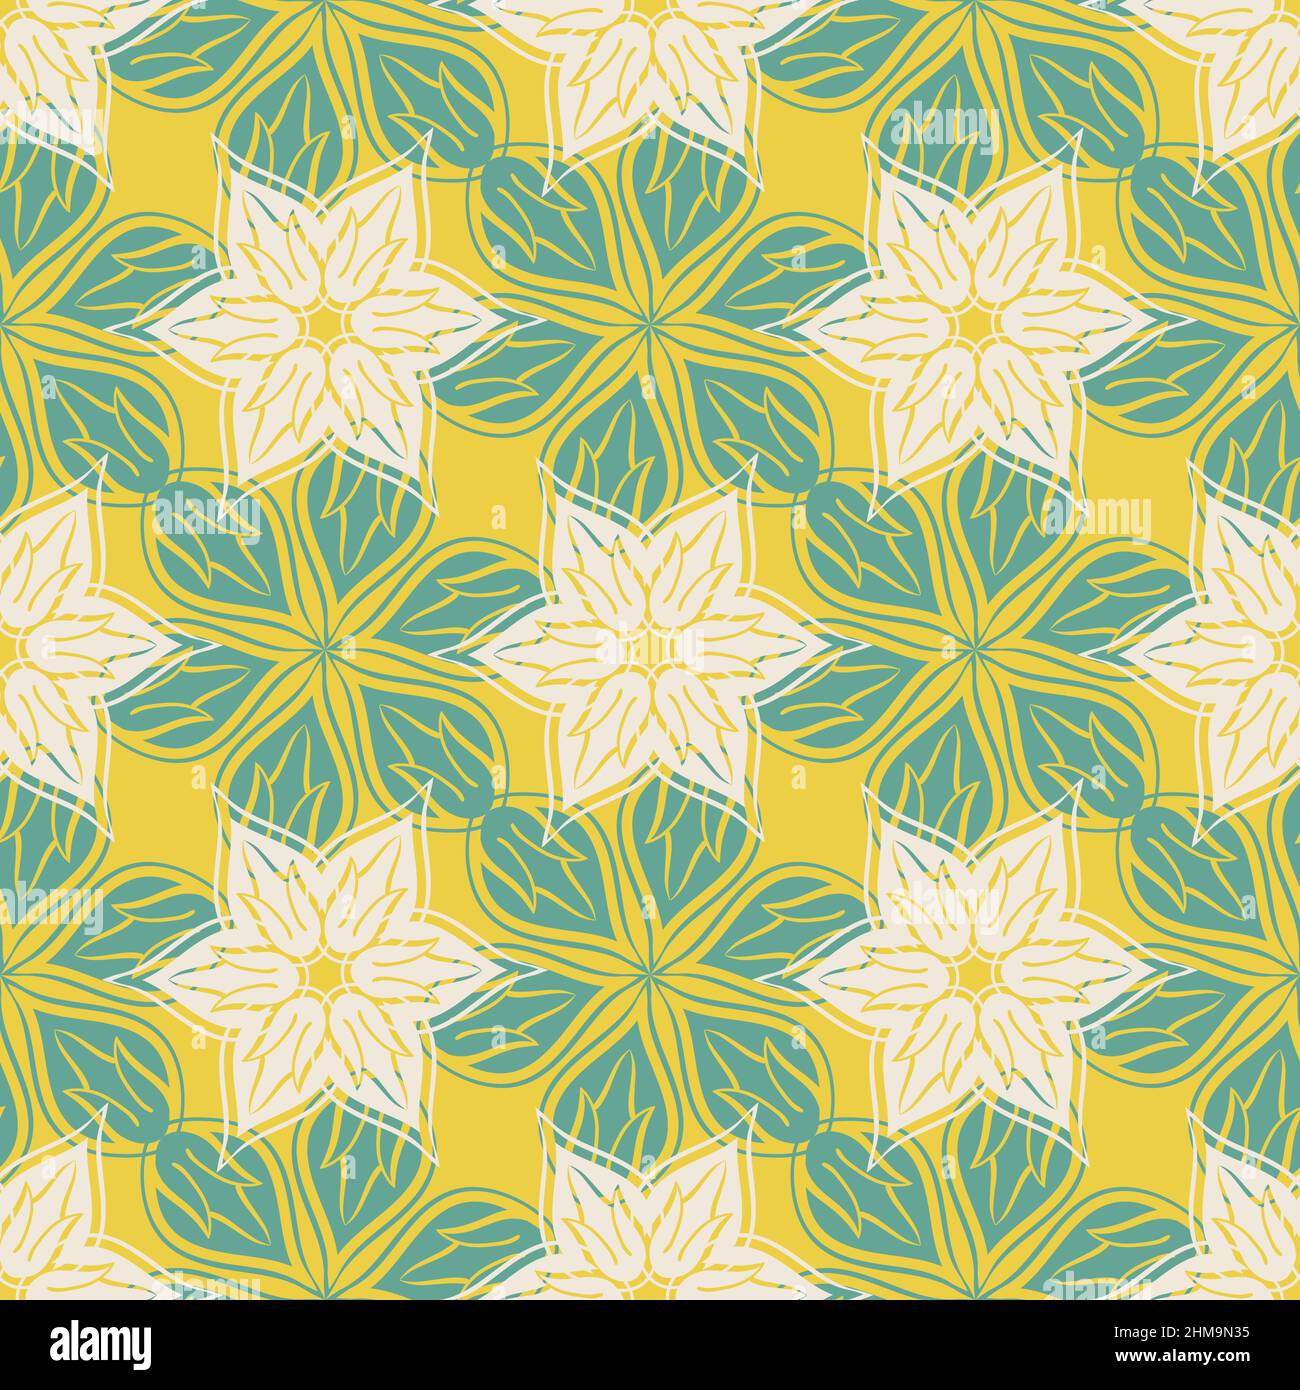 Azulejo Stil moderne abstrakte Blumenköpfe Vektor nahtlose Muster. Sommerlich weißer, grüner, gelber Hintergrund von handgezeichneten Blumenmotiven. Arabesque Stock Vektor